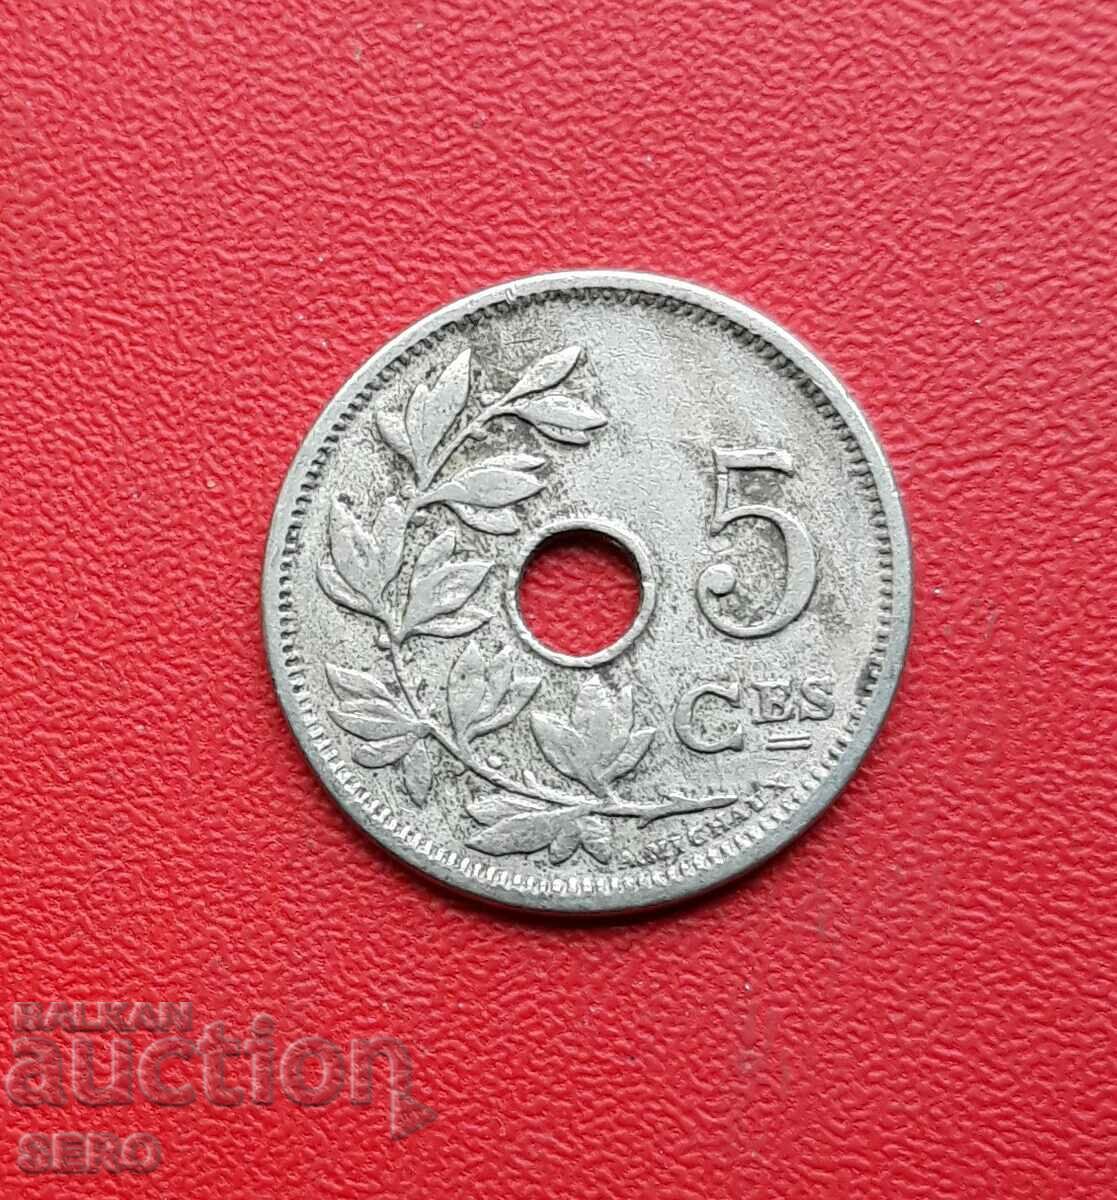 Belgium-5 cents 1905